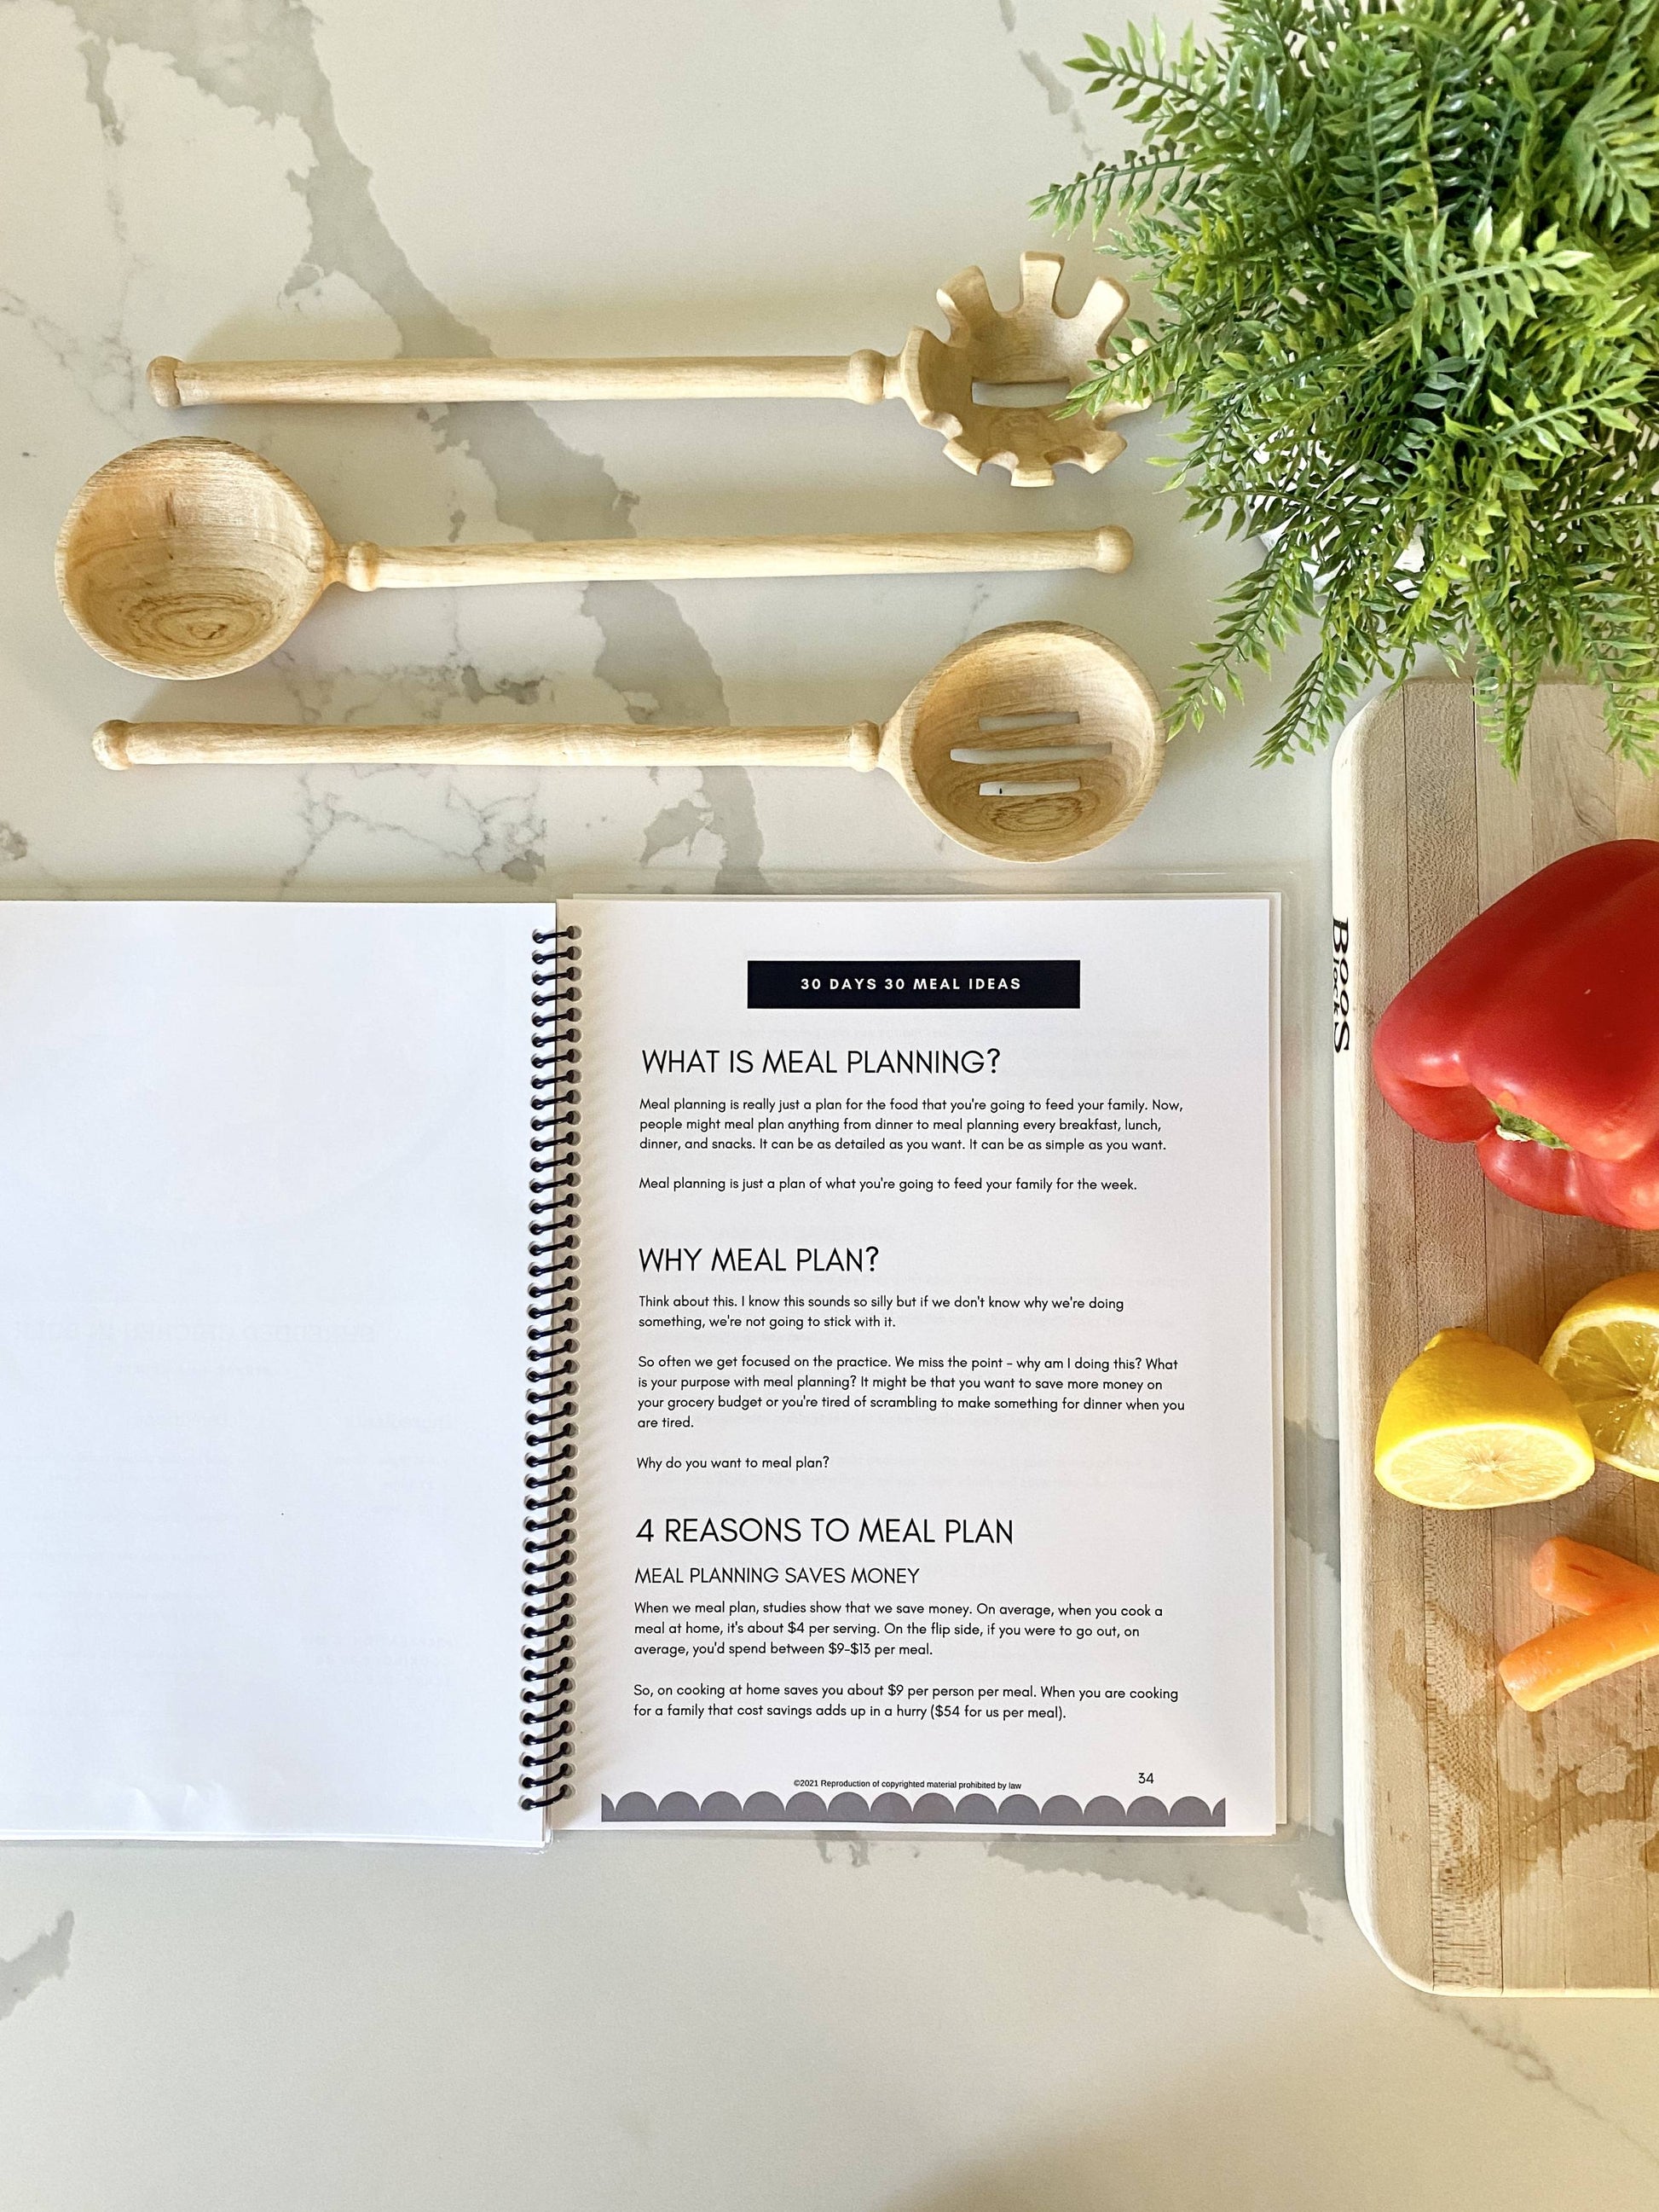 30 days 30 meals printed cookbook bonus material